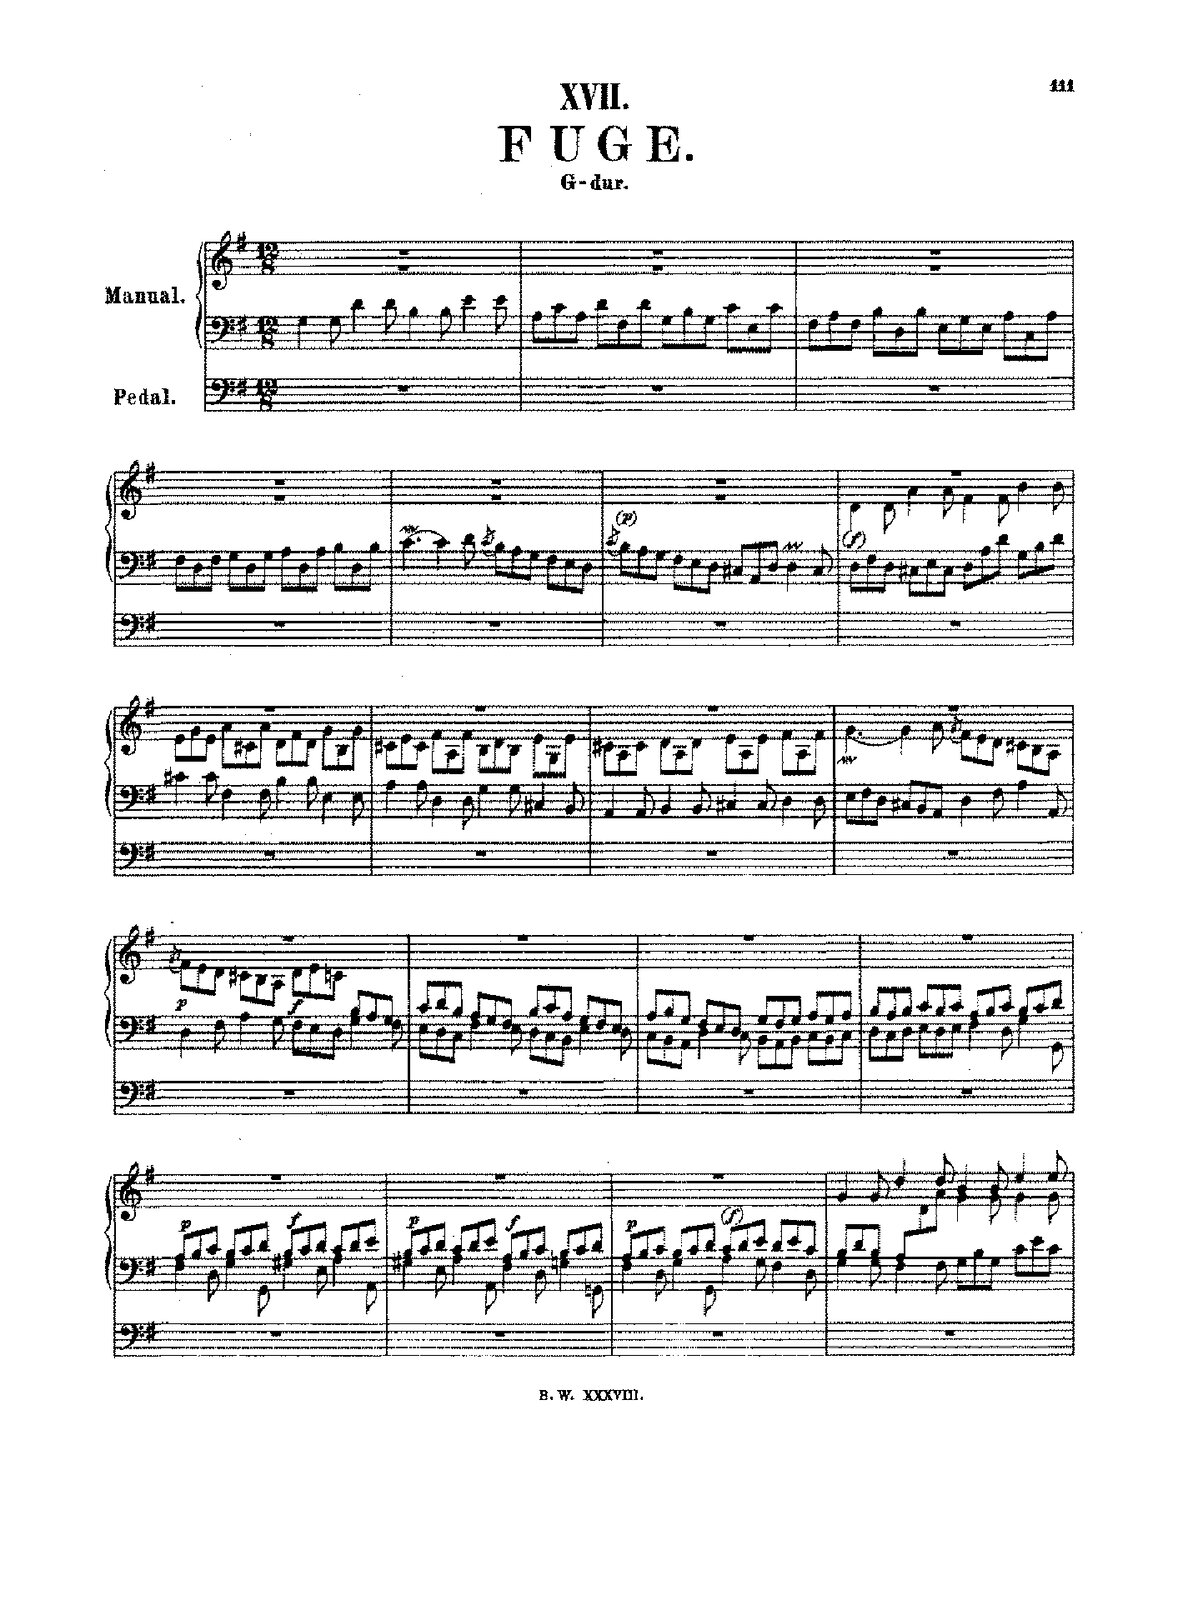 Ilustracja przedstawia widok nutowy utworu: „Fuga G-gur” BWV 577 autorstwa Jana S. Bacha.